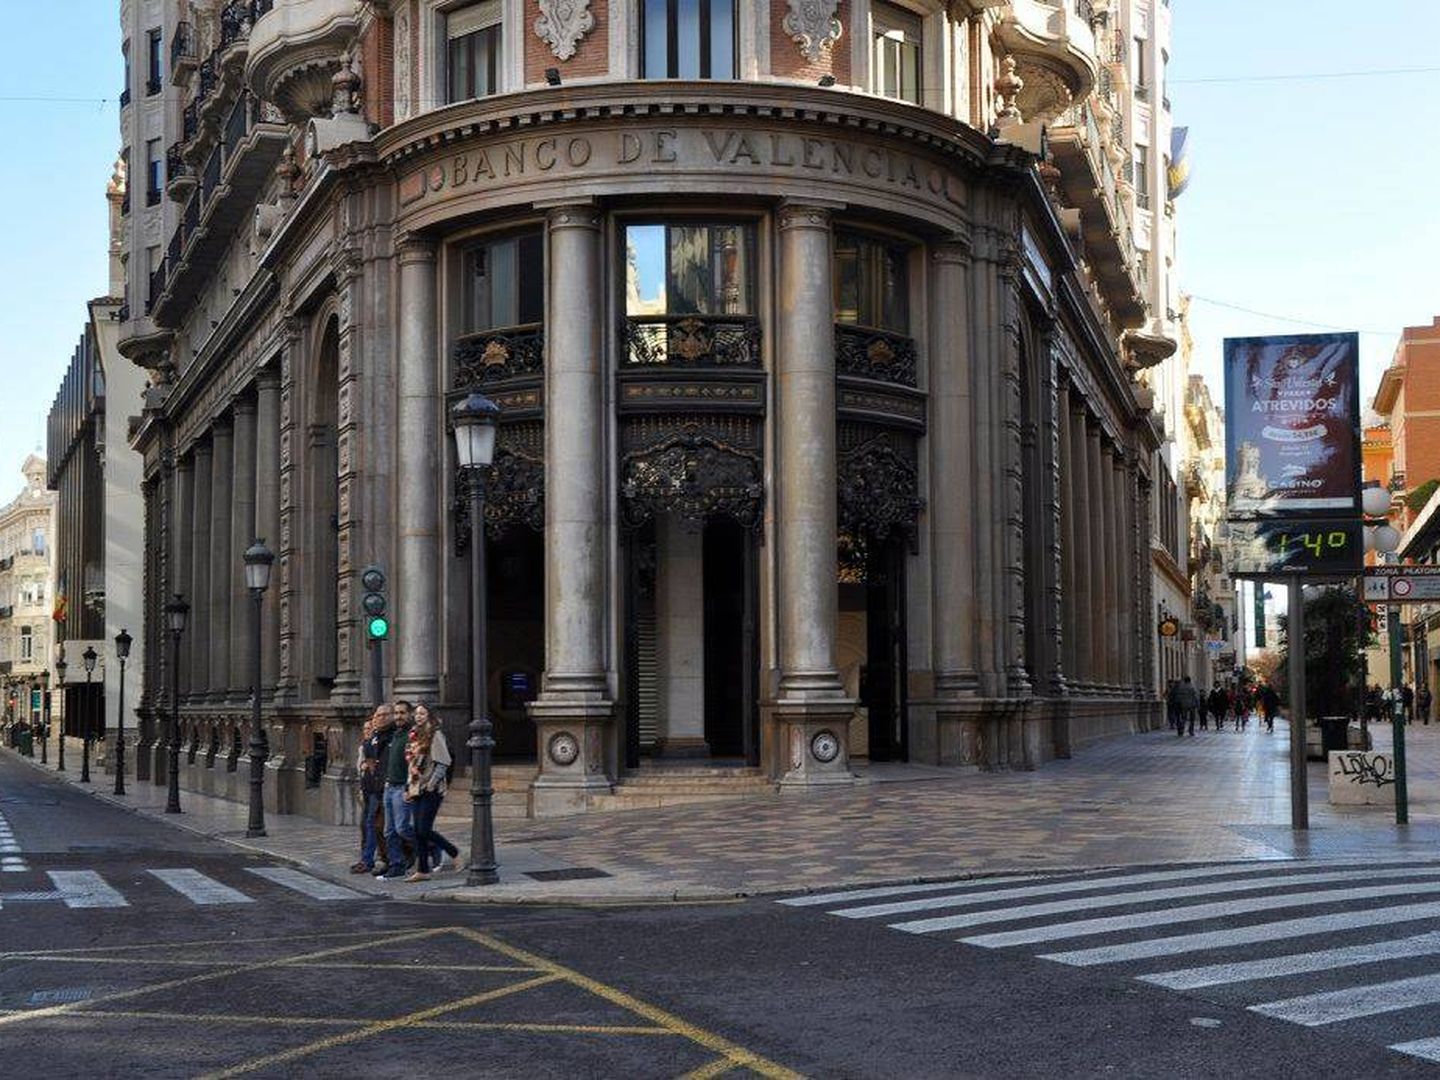 El chaflán del edificio del Banco de Valencia, con el nombre grabado en la fachada. (Fundación Goerlich)